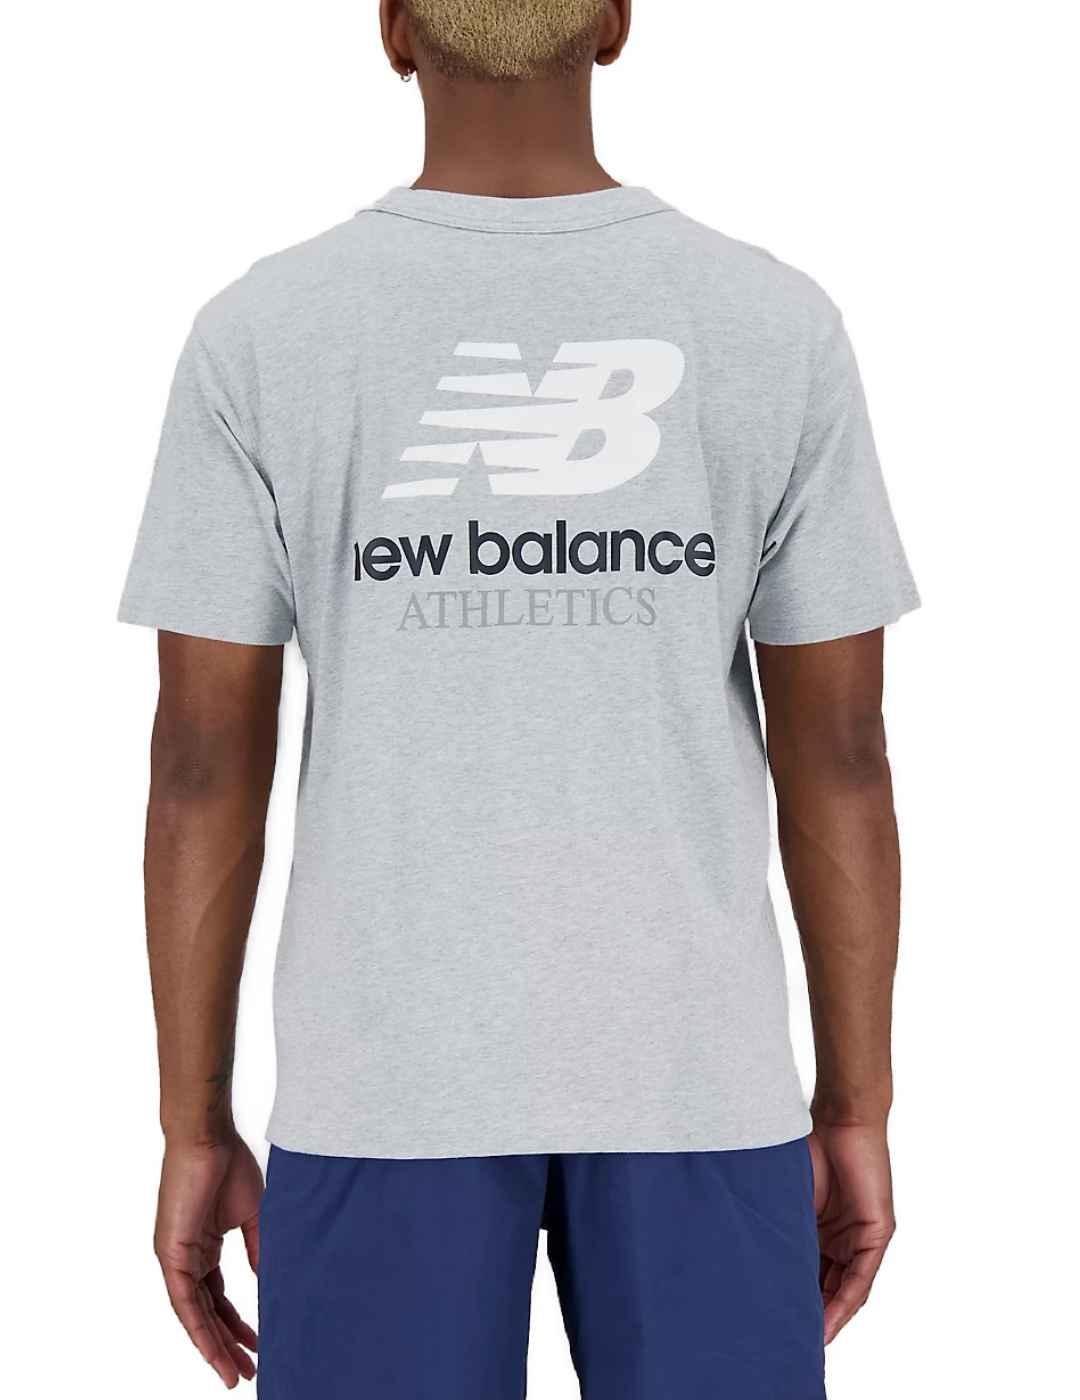 Camiseta New Balance gris manga corta para hombre